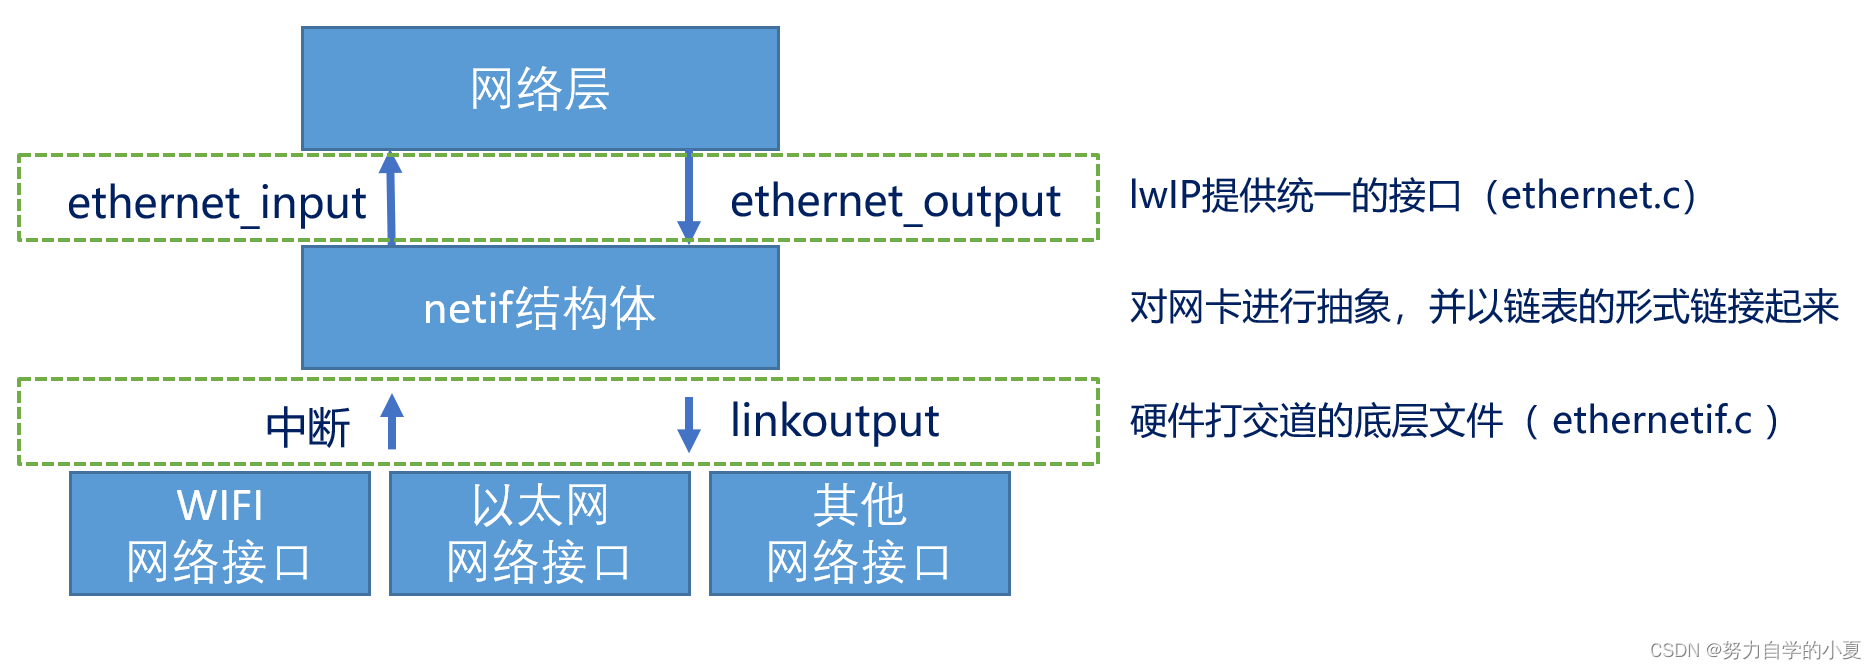 lwIP网络接口的结构示意图